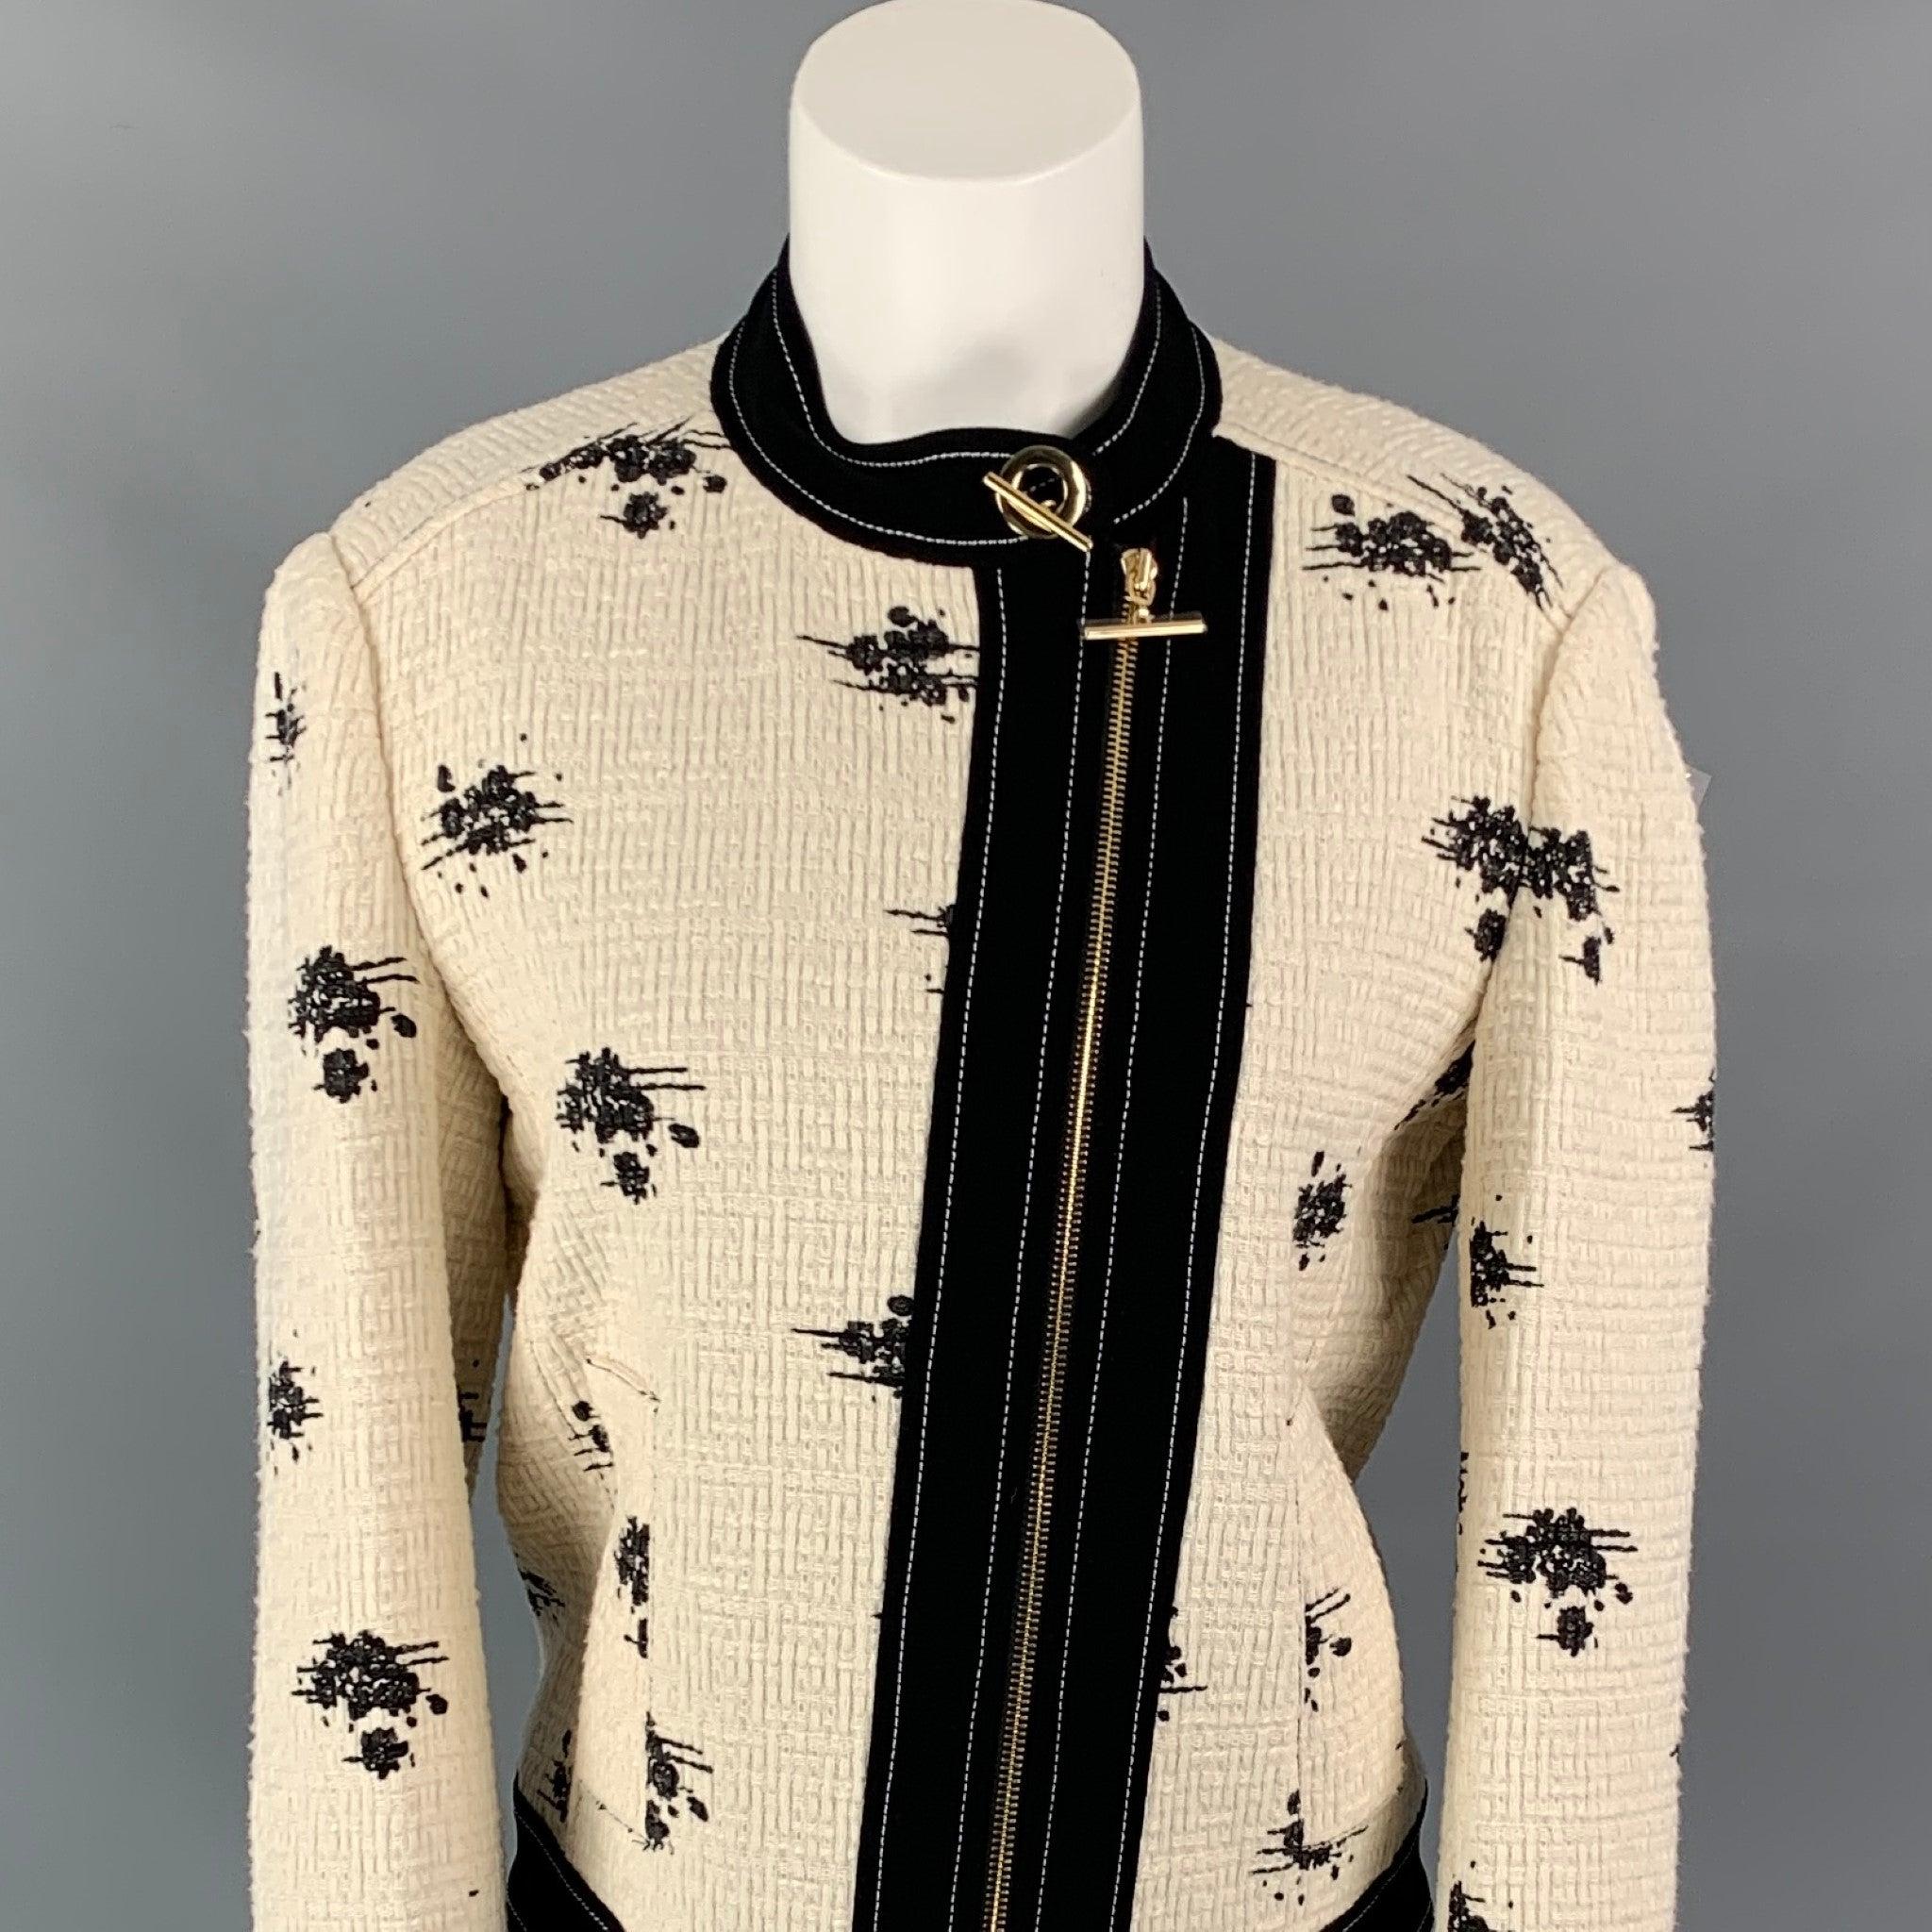 DEREK LAM Jacke aus weiß-schwarz marmorierter Bouclé-Baumwolle mit goldfarbener Hardware, Kontrastnähten, Schlitztaschen und durchgehendem Reißverschluss.
Neu mit Tags.
 

Markiert:   6 

Abmessungen: 
 
Schultern: 16,5 Zoll  Oberweite: 38 Zoll 